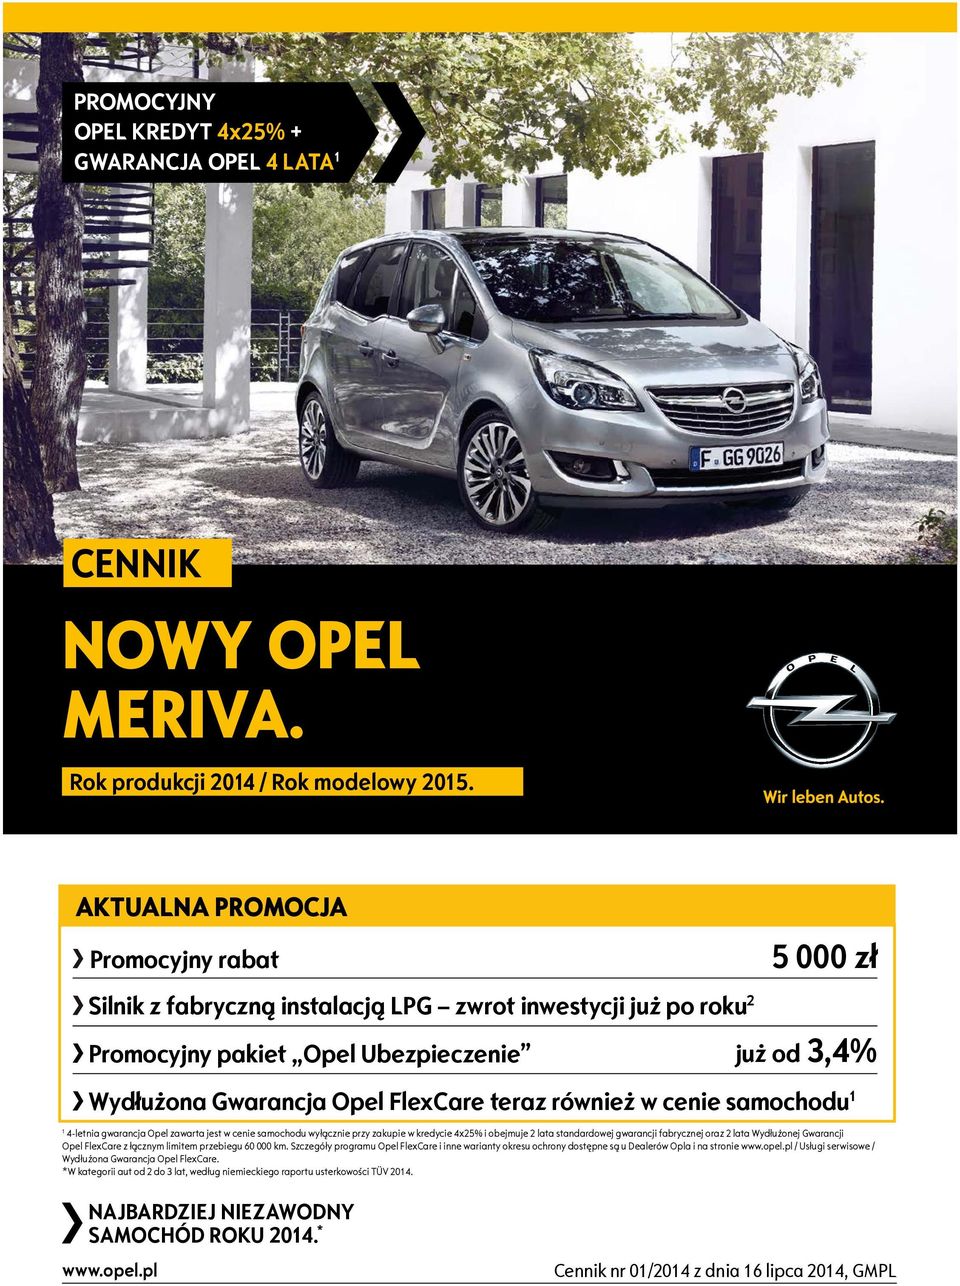 warancja Opel Fle are teraz również w cenie samochodu 1 1 4 letnia gwarancja Opel zawarta jest w cenie samochodu wyłącznie przy zakupie w kredycie 4 25 i obejmuje 2 lata standardowej gwarancji